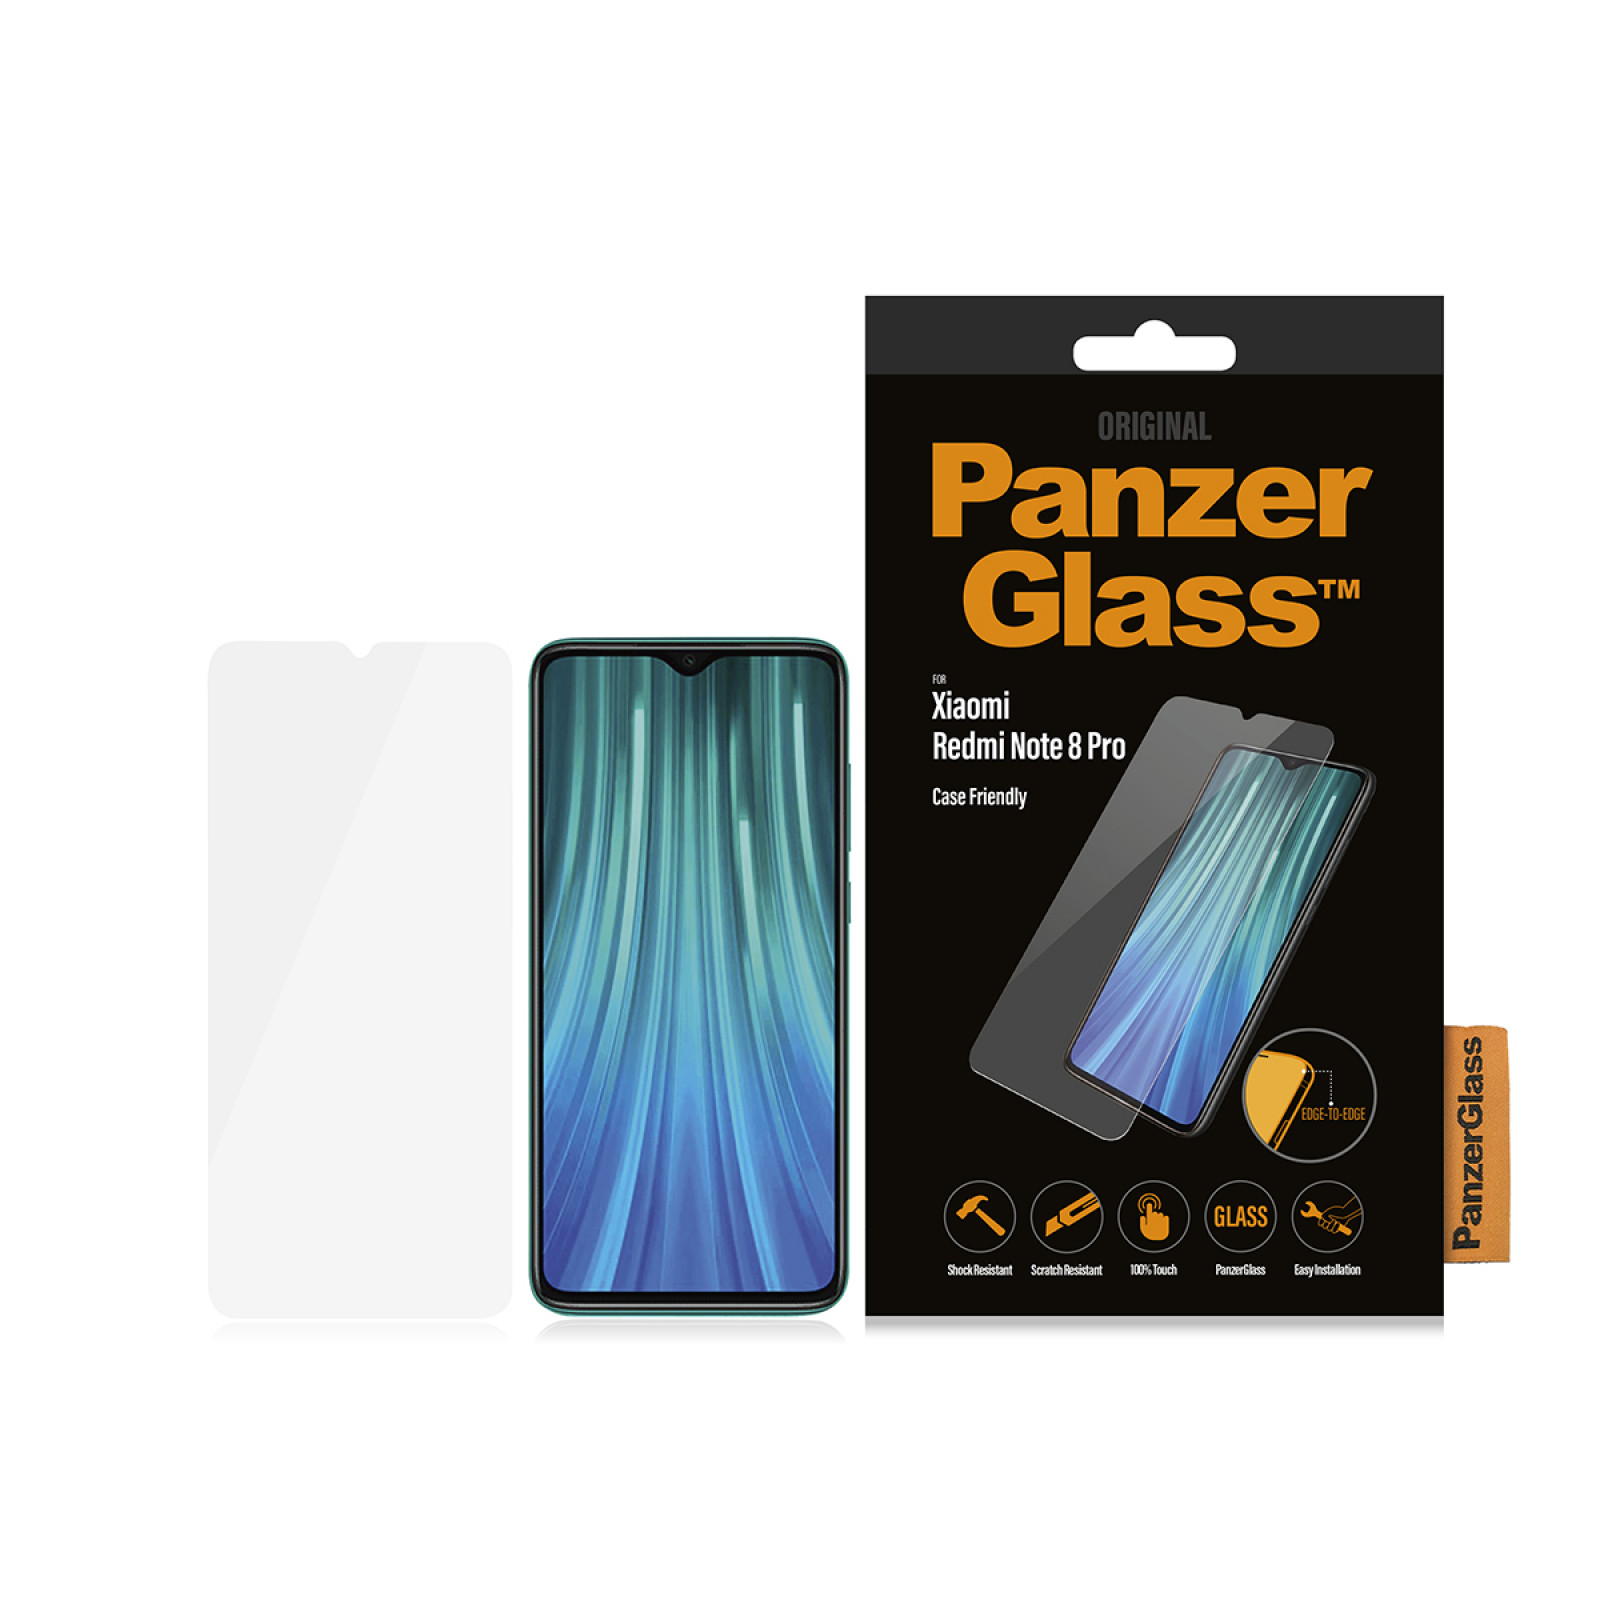 Стъклен протектор PanzerGlass за Xiaomi Redmi Note 8 Pro Case Friendly Черен